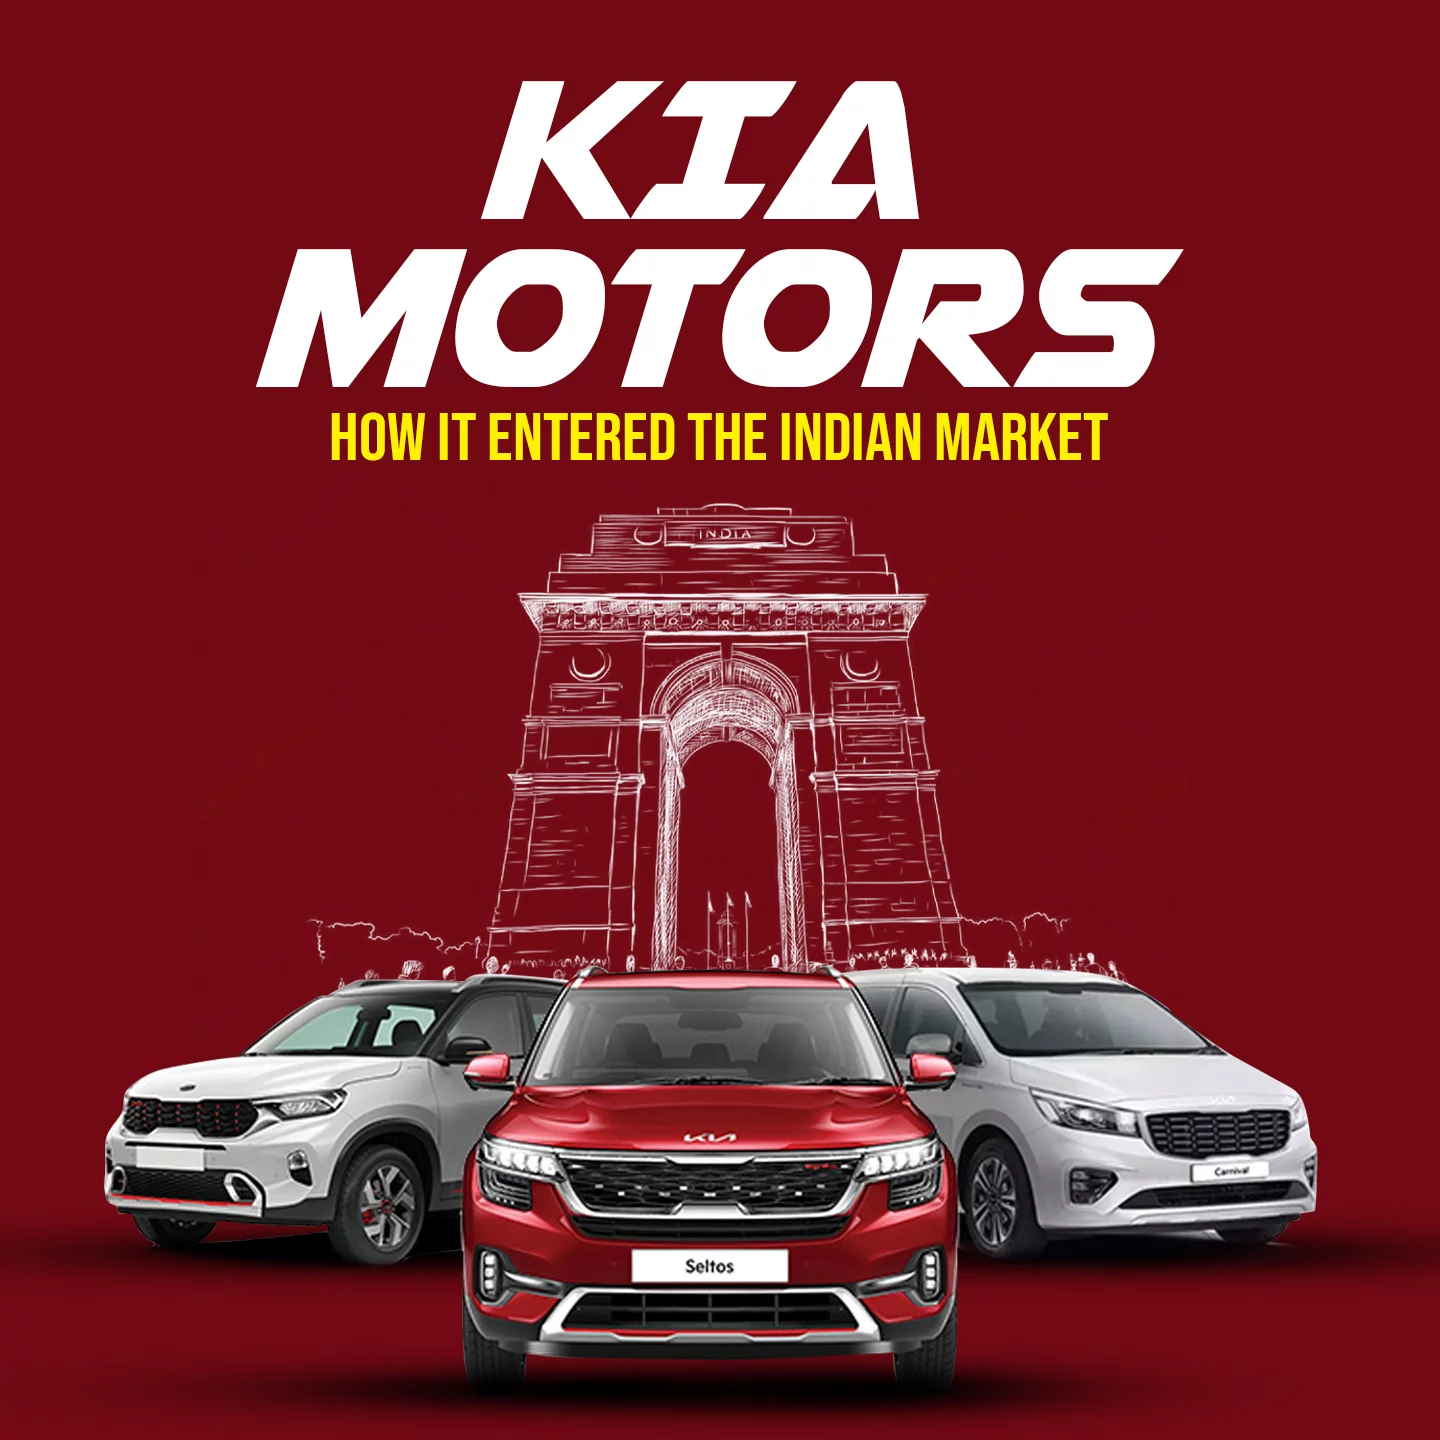 6. Future Plans Of Kia Motors